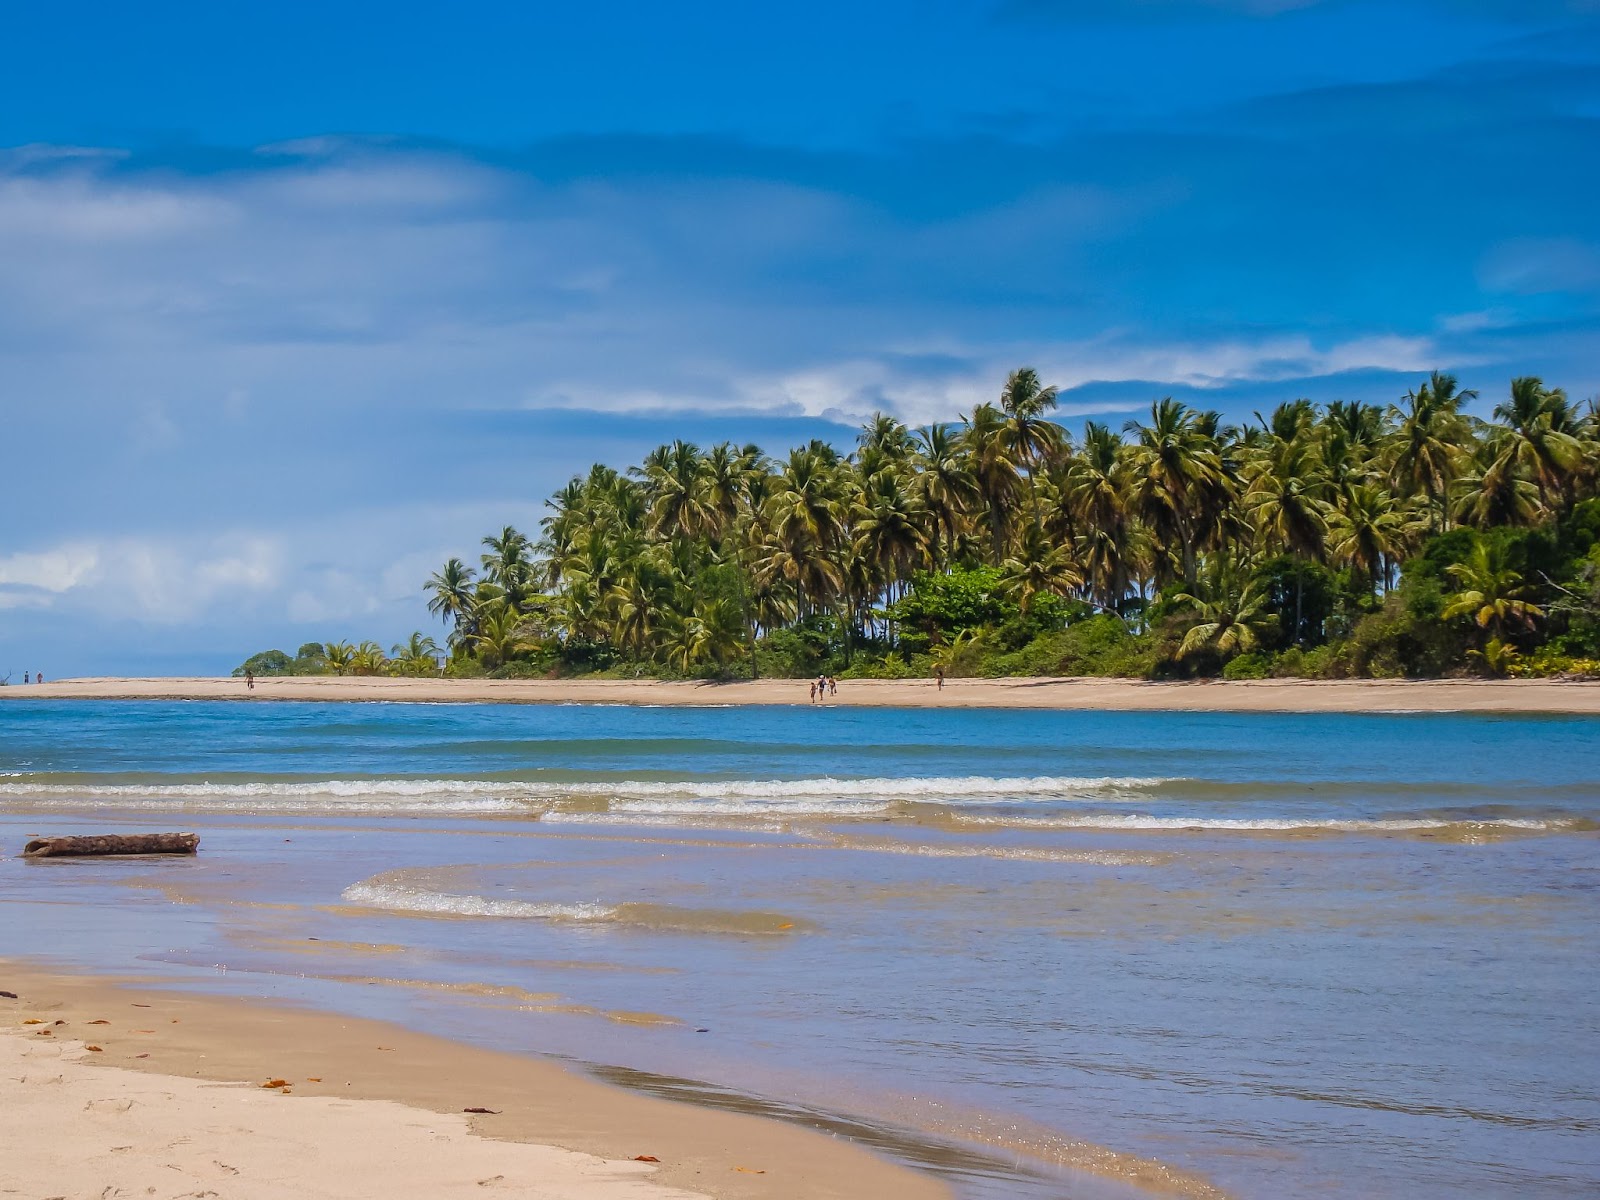 Praia do Moreré, na Ilha de Boipeba, Bahia. Os grandes bancos de areia são separados pelas águas azuis do mar, que formam ondas discretas. Há poucas pessoas caminhando pela praia, em frente a uma mata de palmeiras verdes
